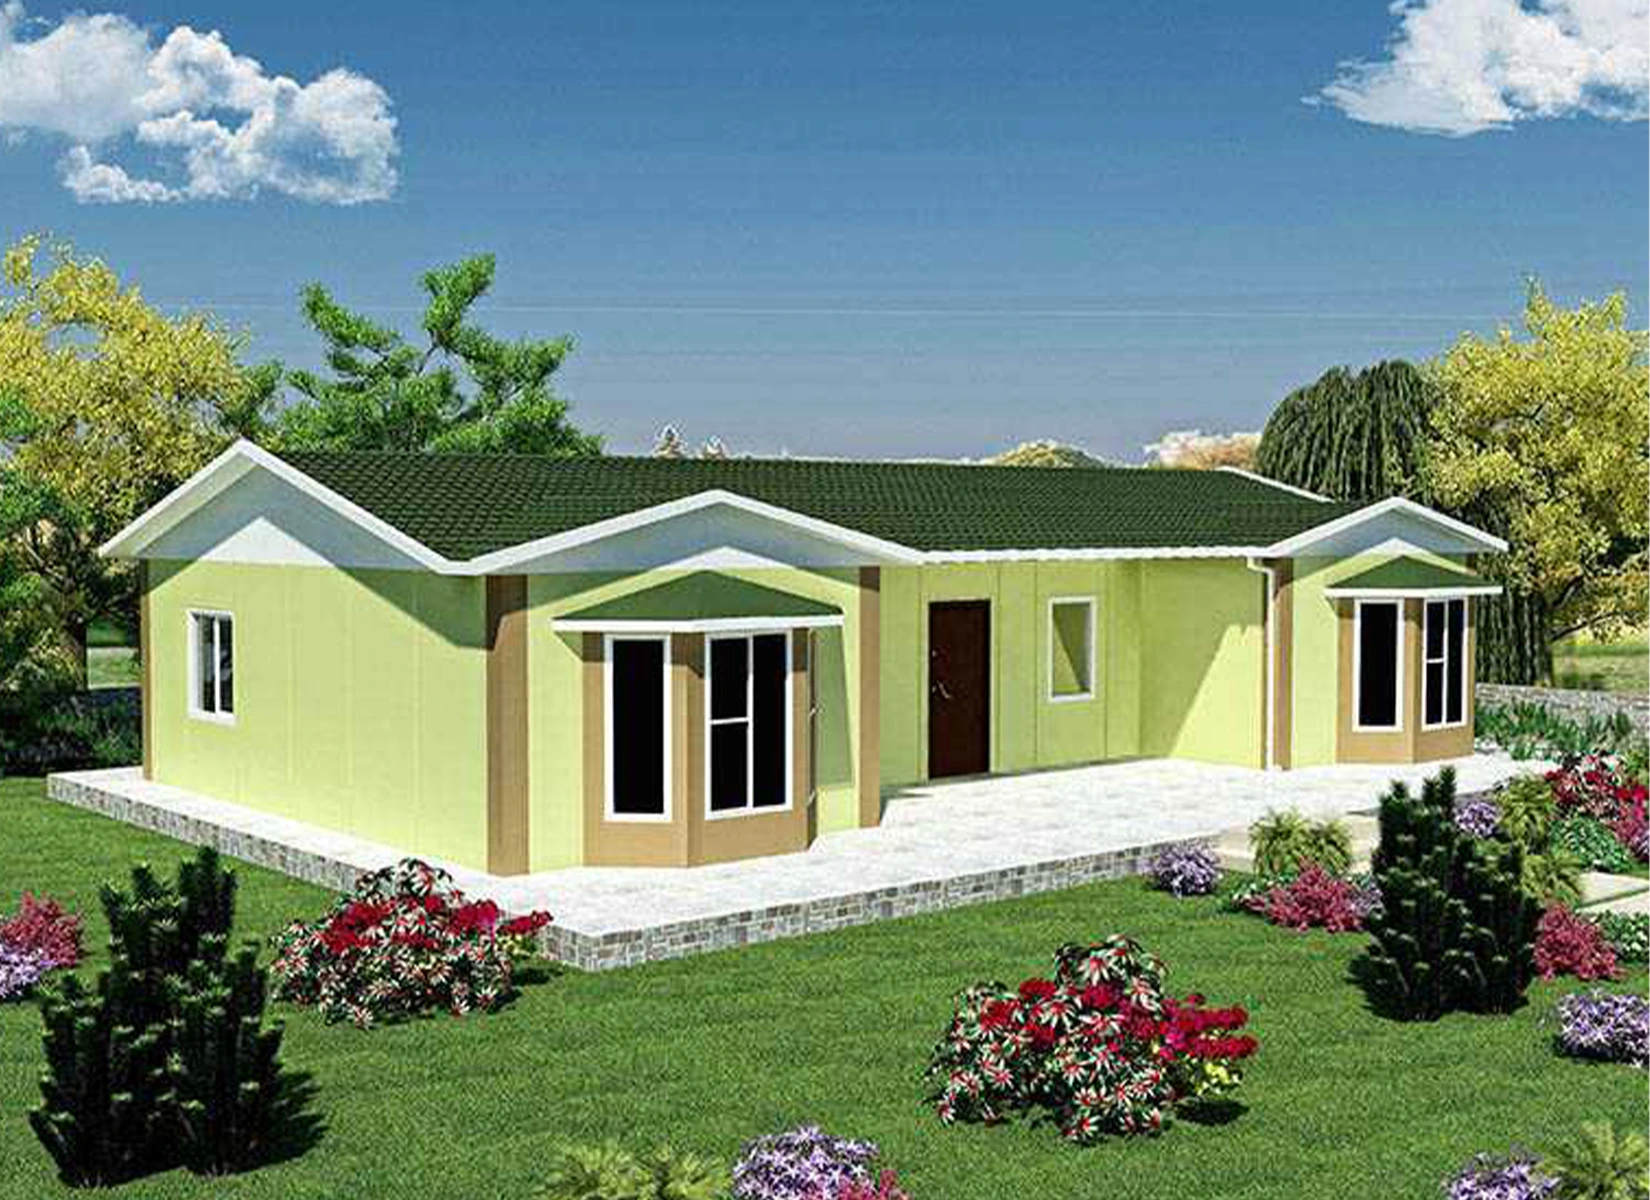 98 m² Tek Katlı Prefabrik Evler dincerler prefabrik ev ve güneş enerji sistemleri- Edirne-Keşan